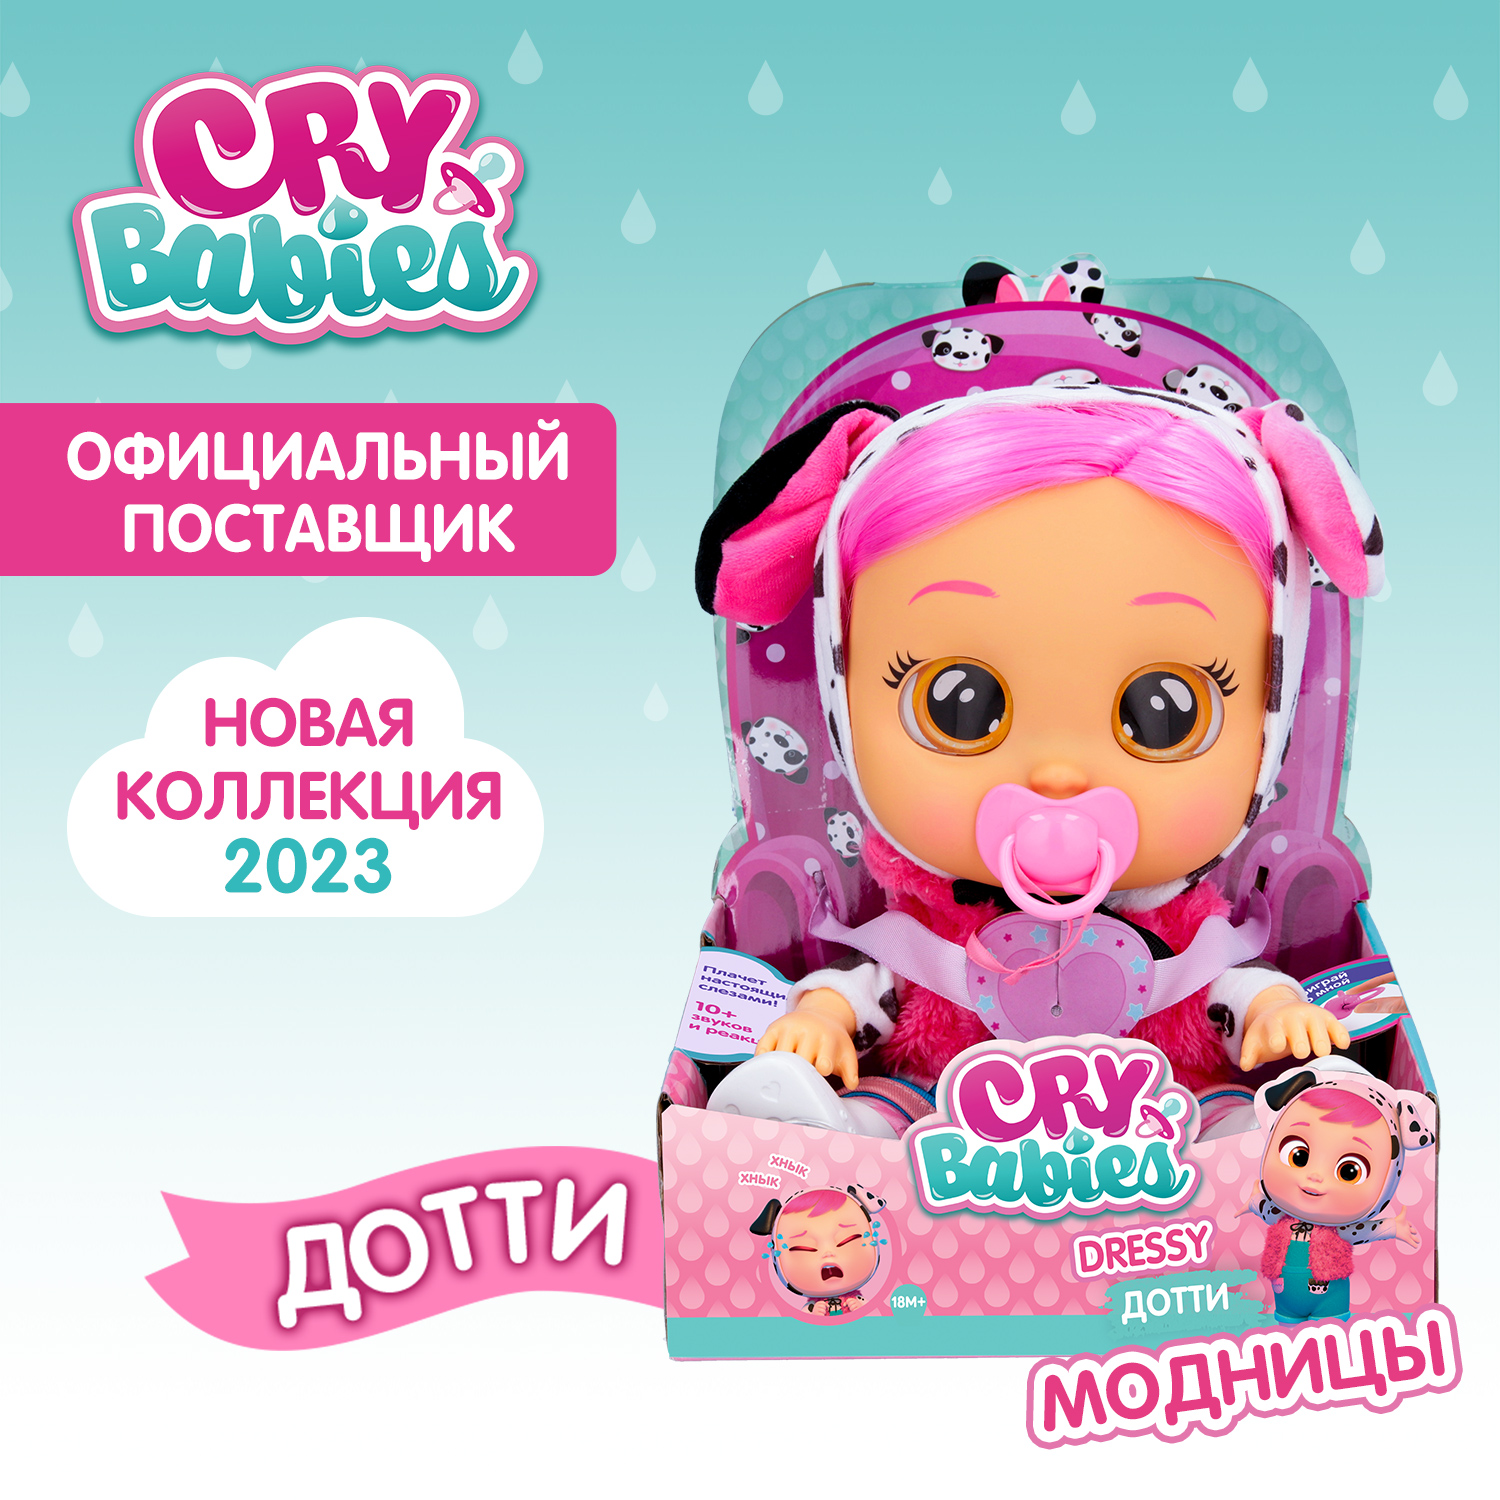 Кукла Cry Babies Дотти Модница, интерактивная, плачущая, 40884 кукла cry babies дейзи модница интерактивная плачущая 40887